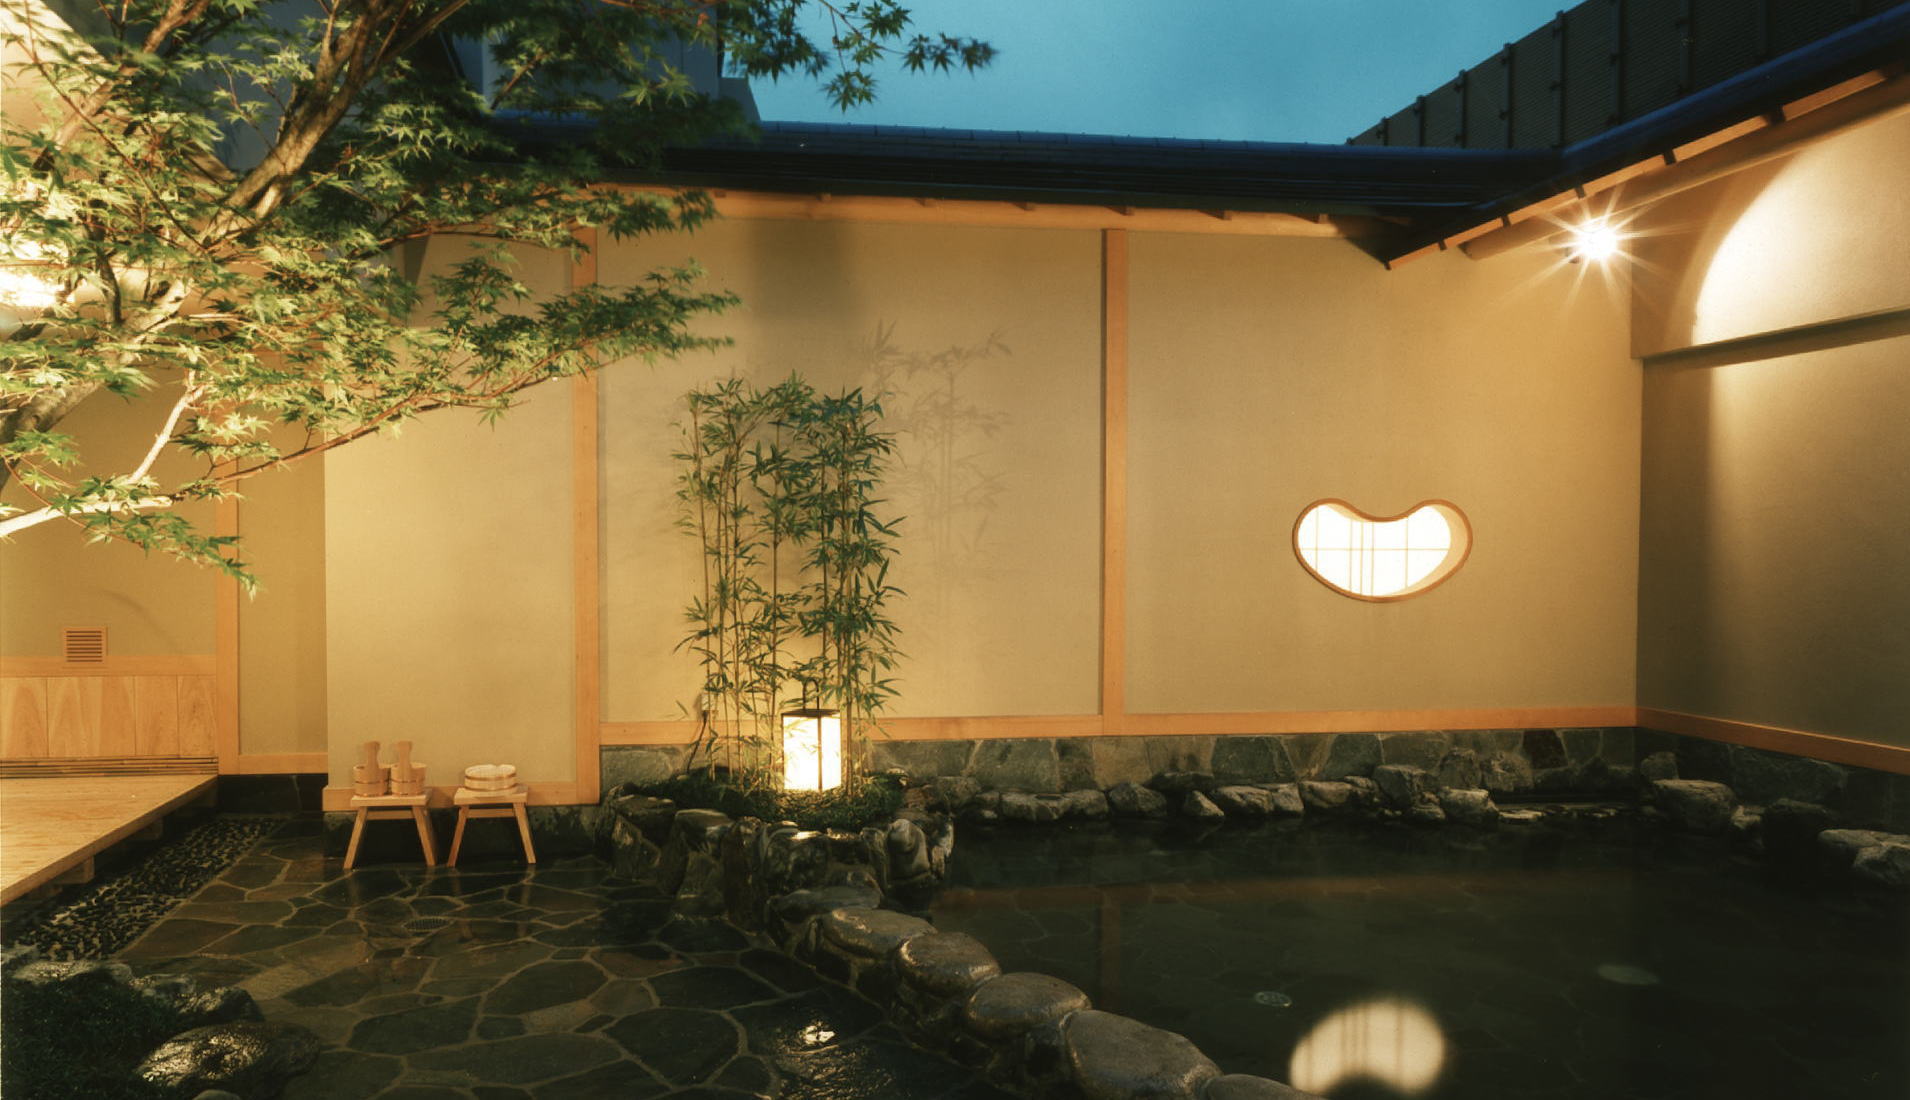 京都 旅館 湯の宿 松栄は京都市内の旅館で随一の浴場施設